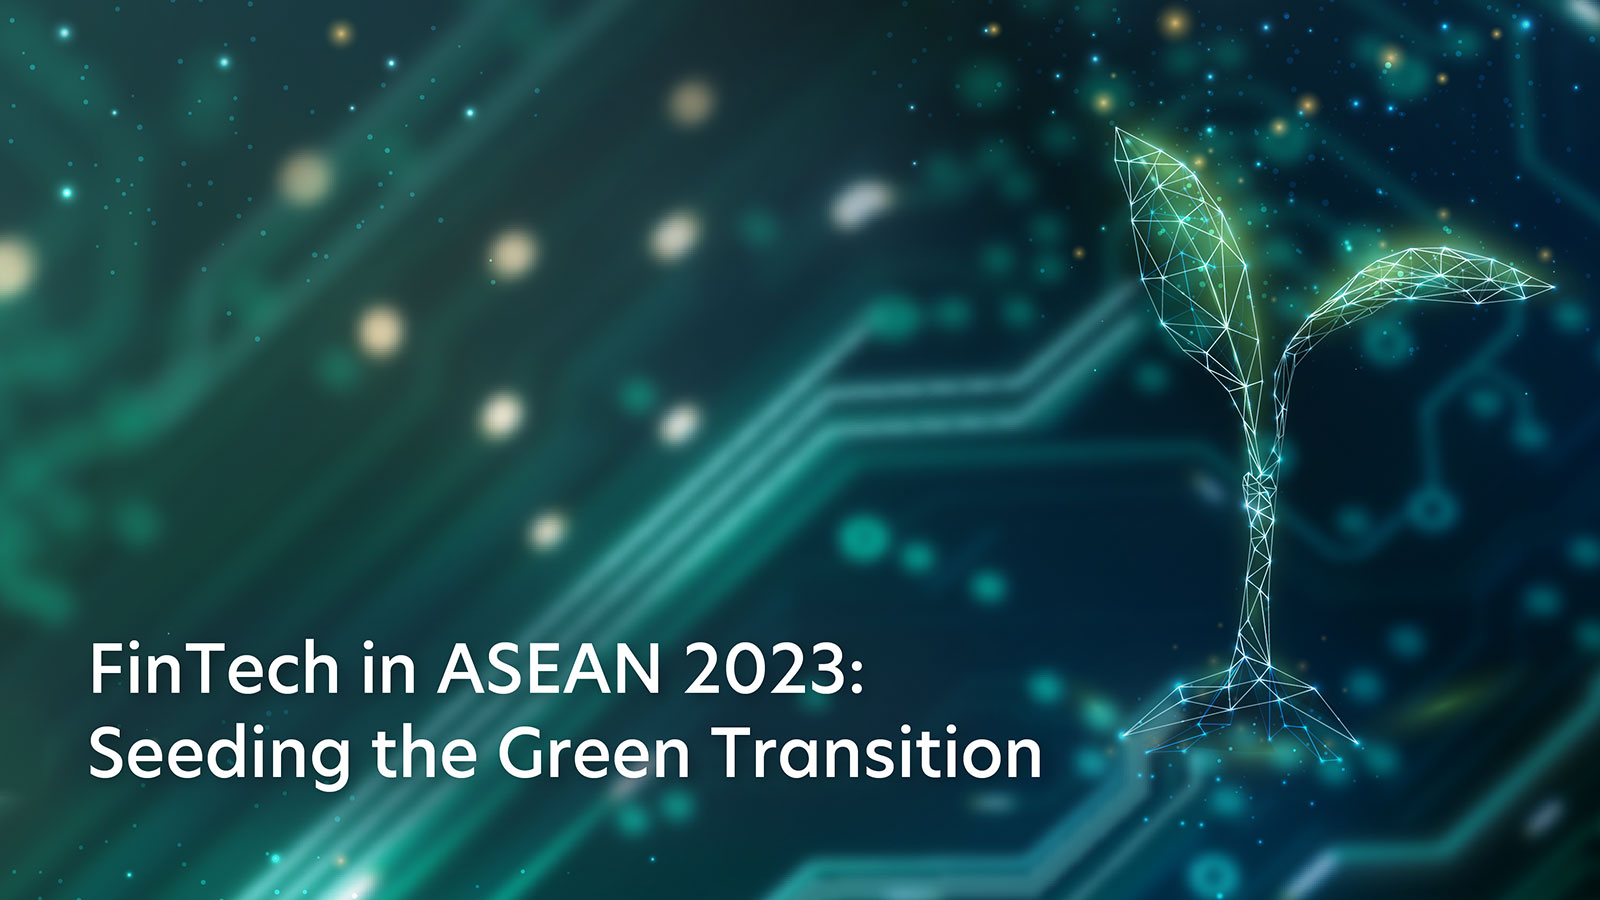 FinTech in ASEAN 2023